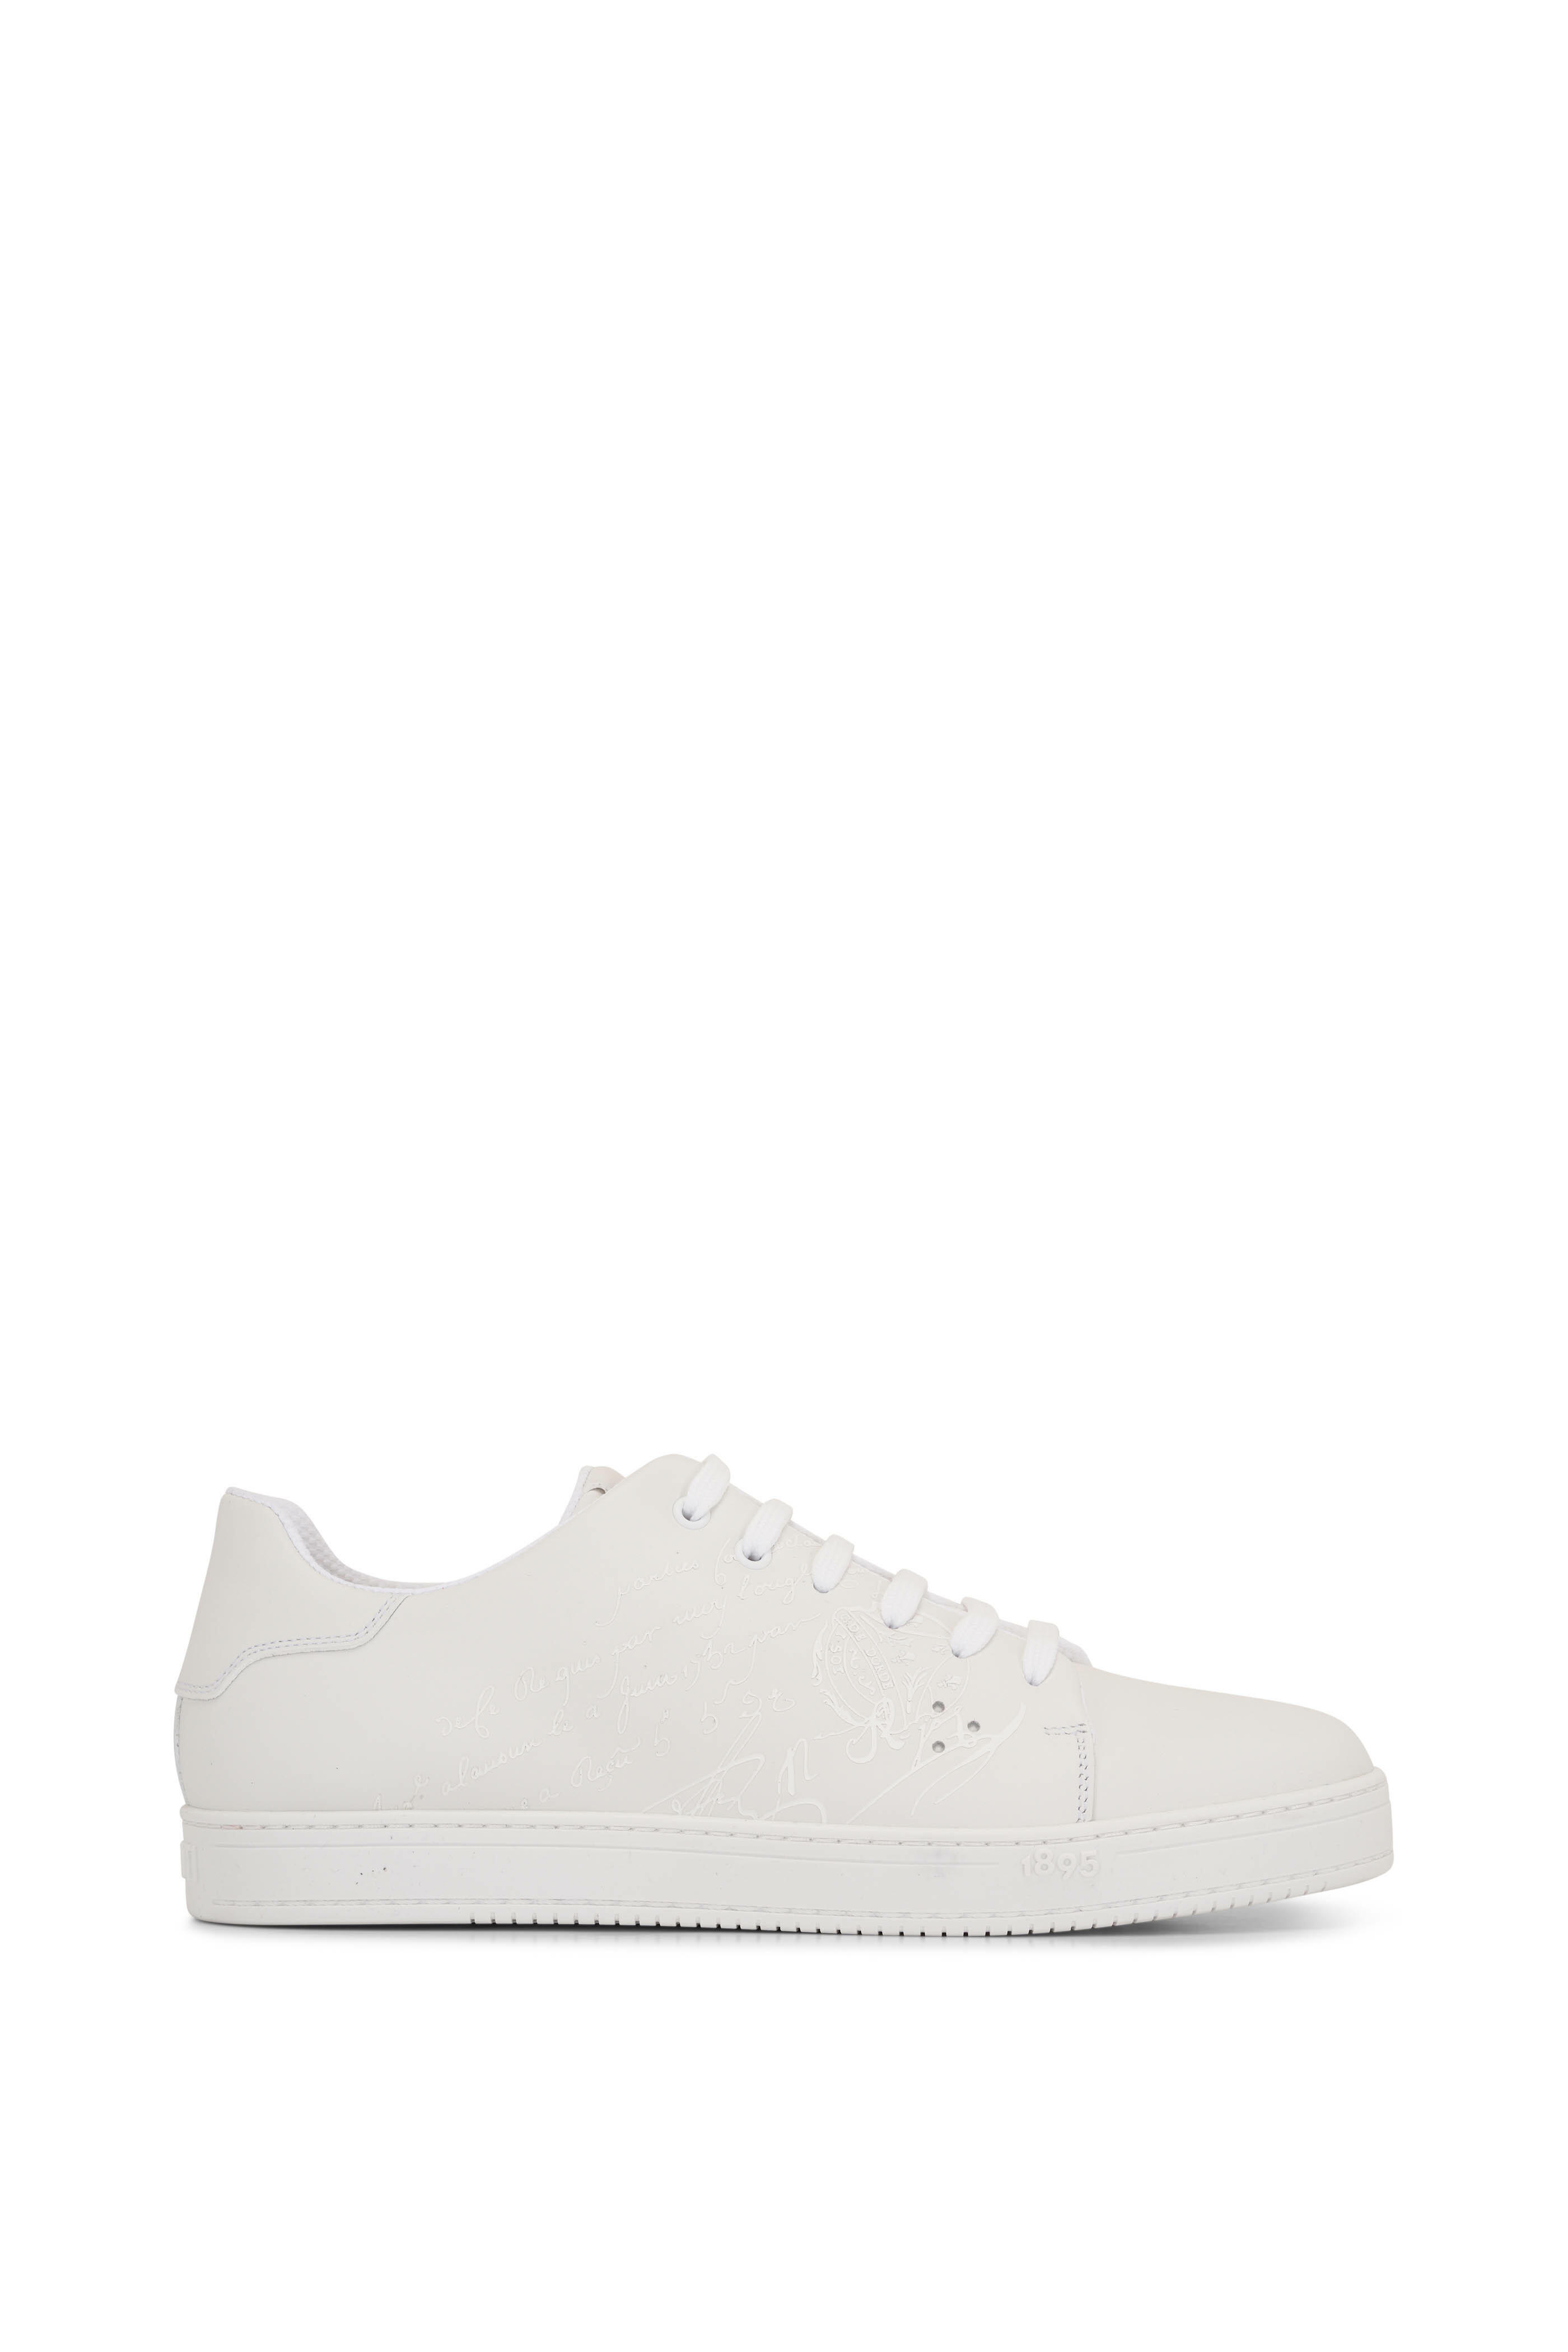 Berluti - Playtime Scritto Full White Leather Sneaker